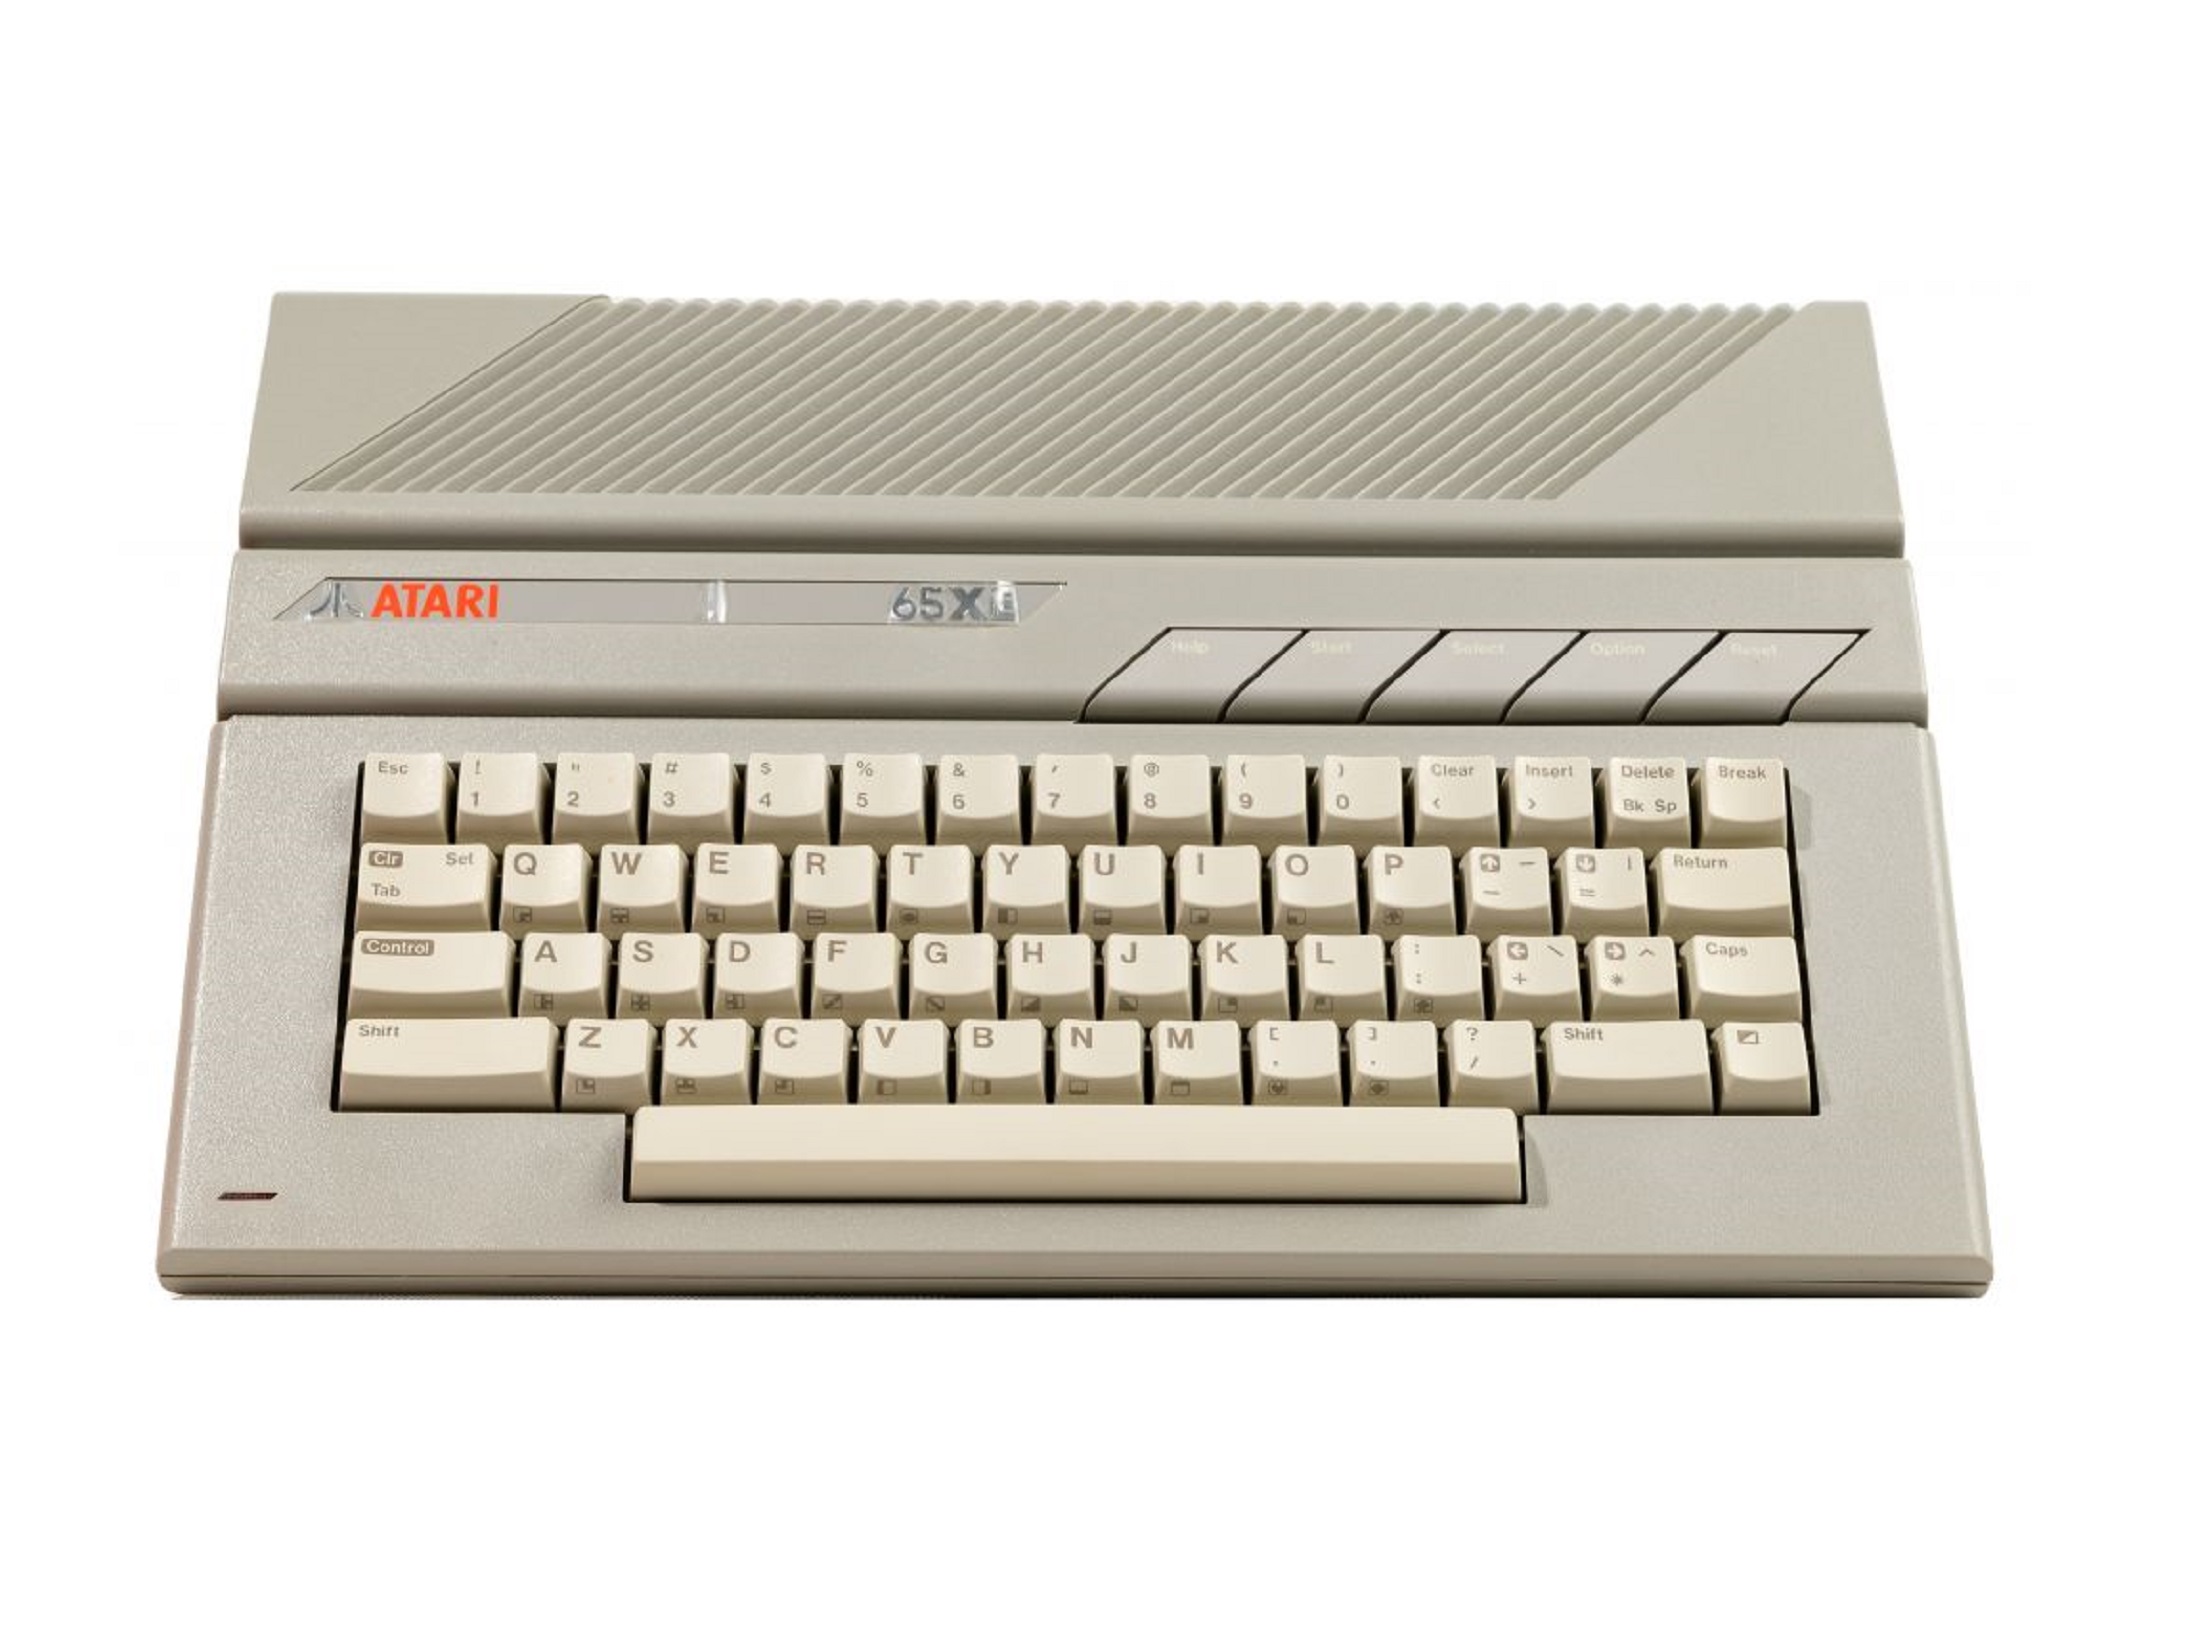 Atari 65XE: Consola